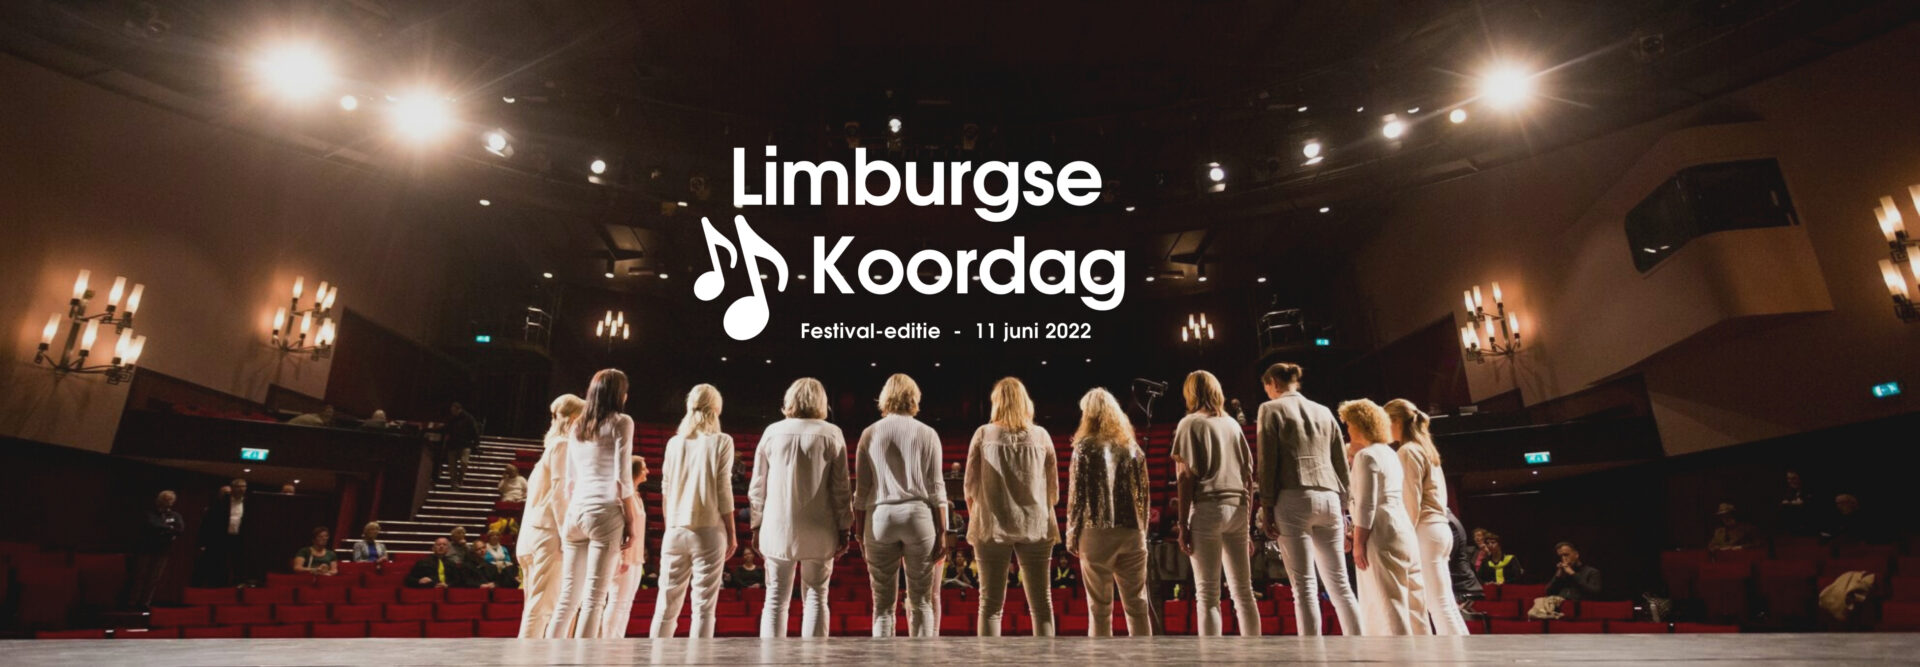 Banner-Limburgse-Koordag-Festival-Website